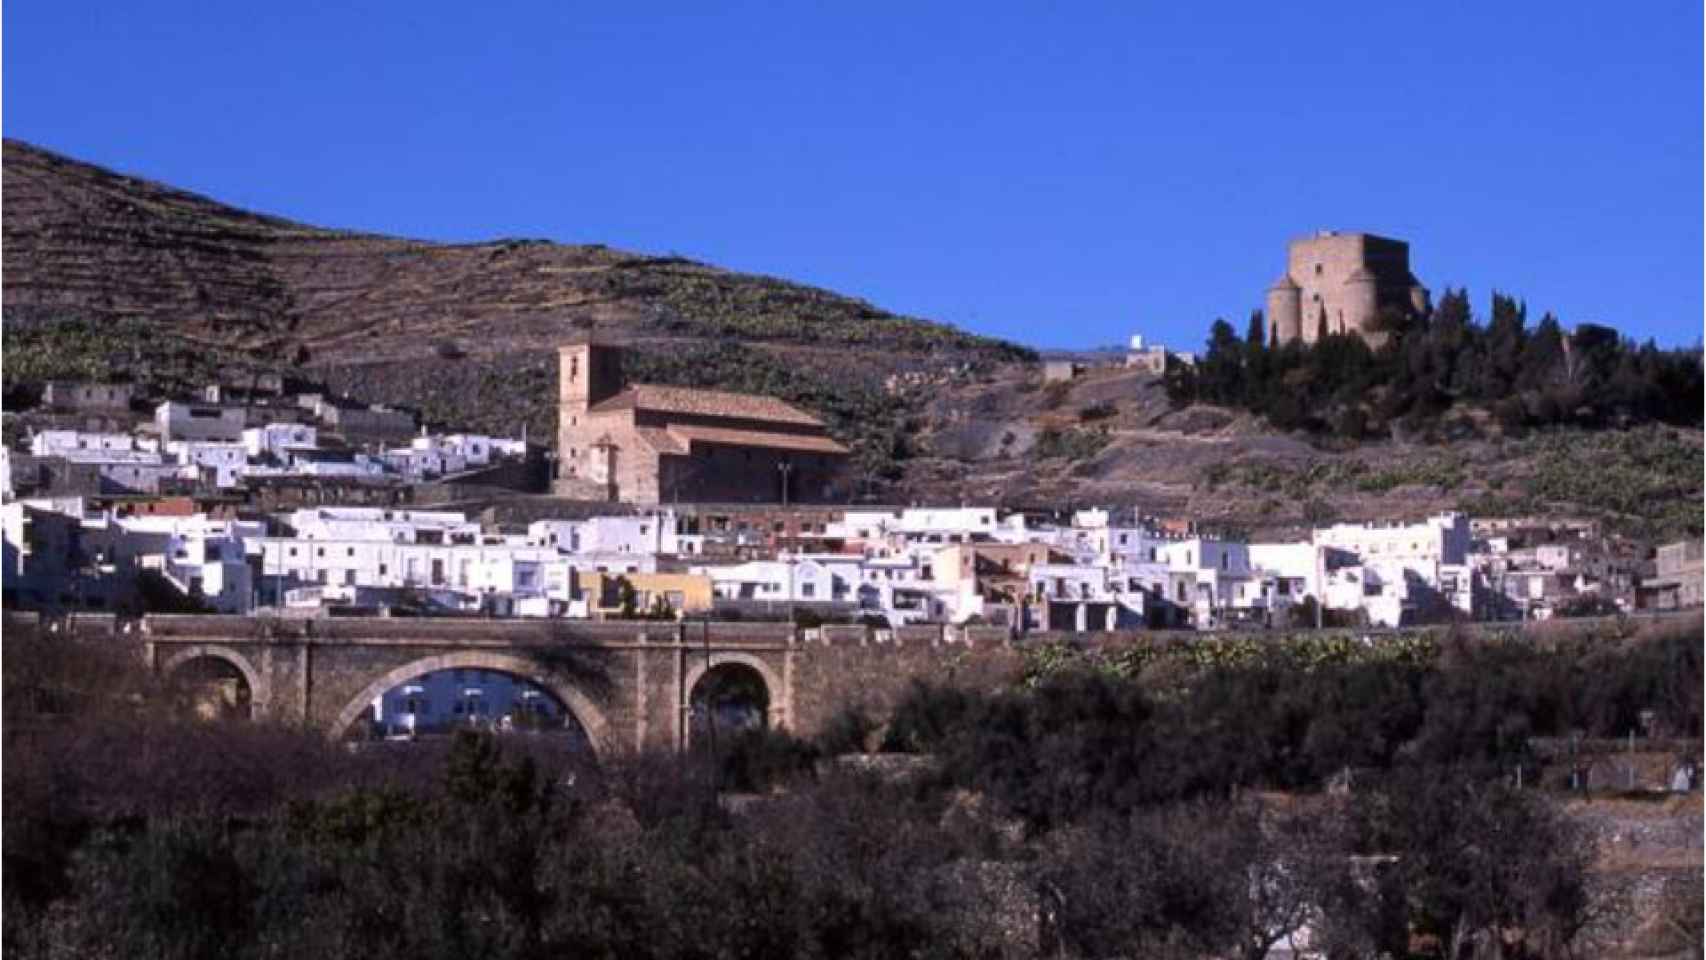 Una vista panorámica del pueblo almeriense de Gérgal difundida en un portal de turismo de la Junta de Andalucía.